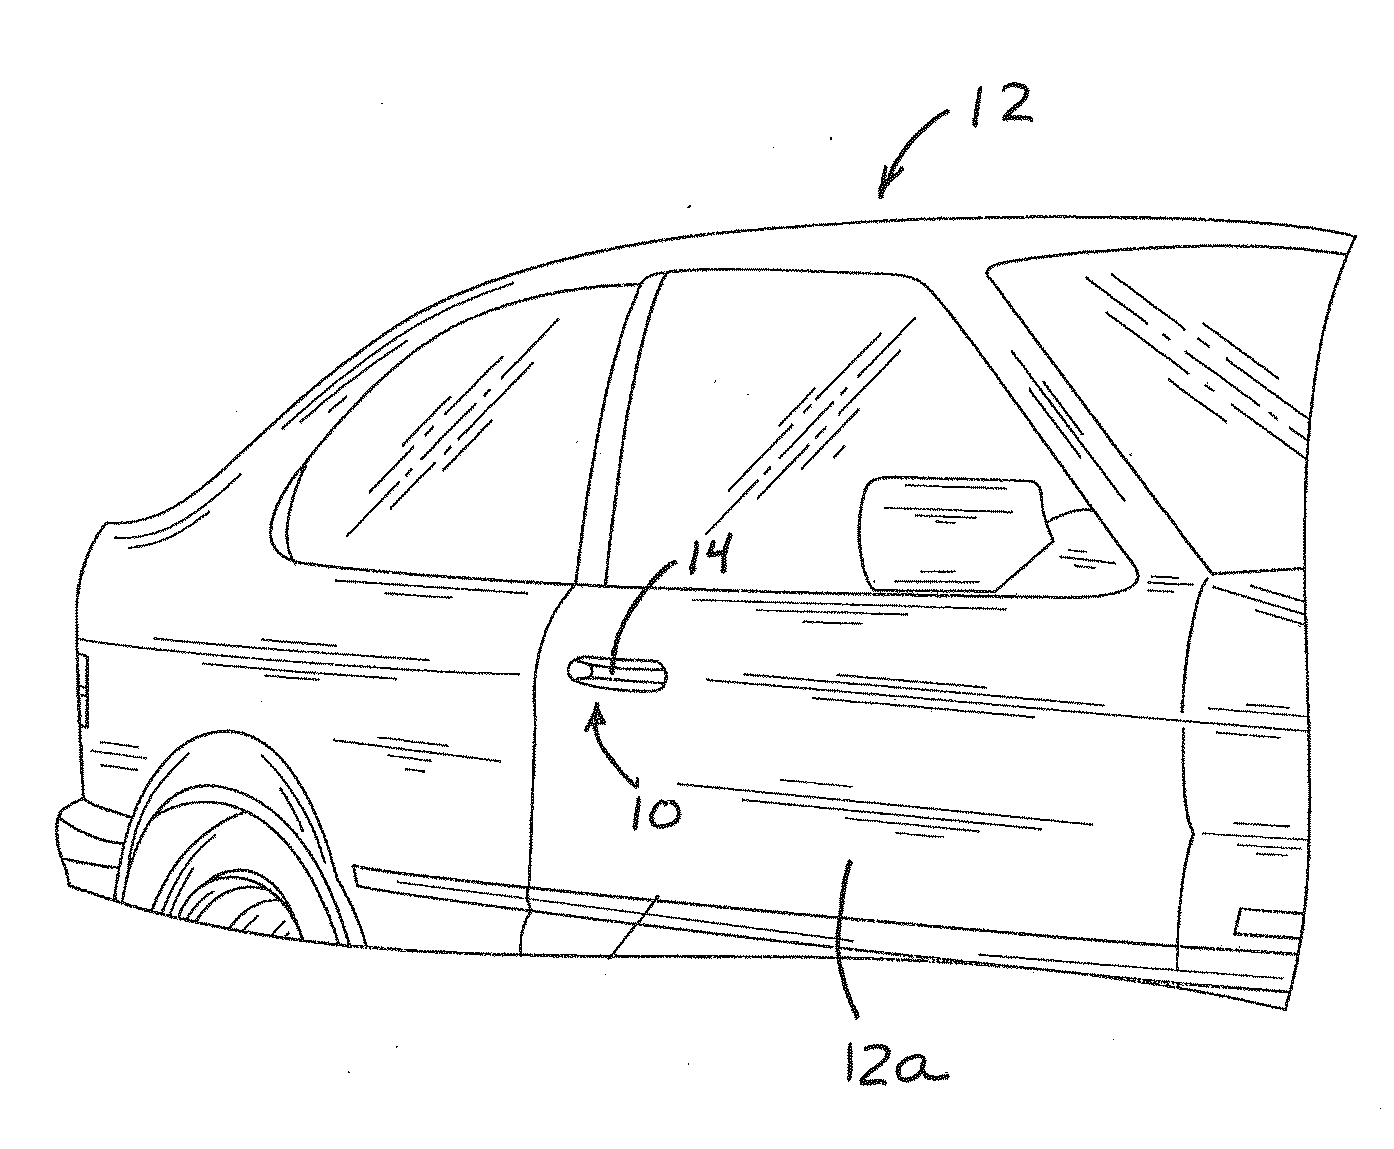 Illumination module for vehicle